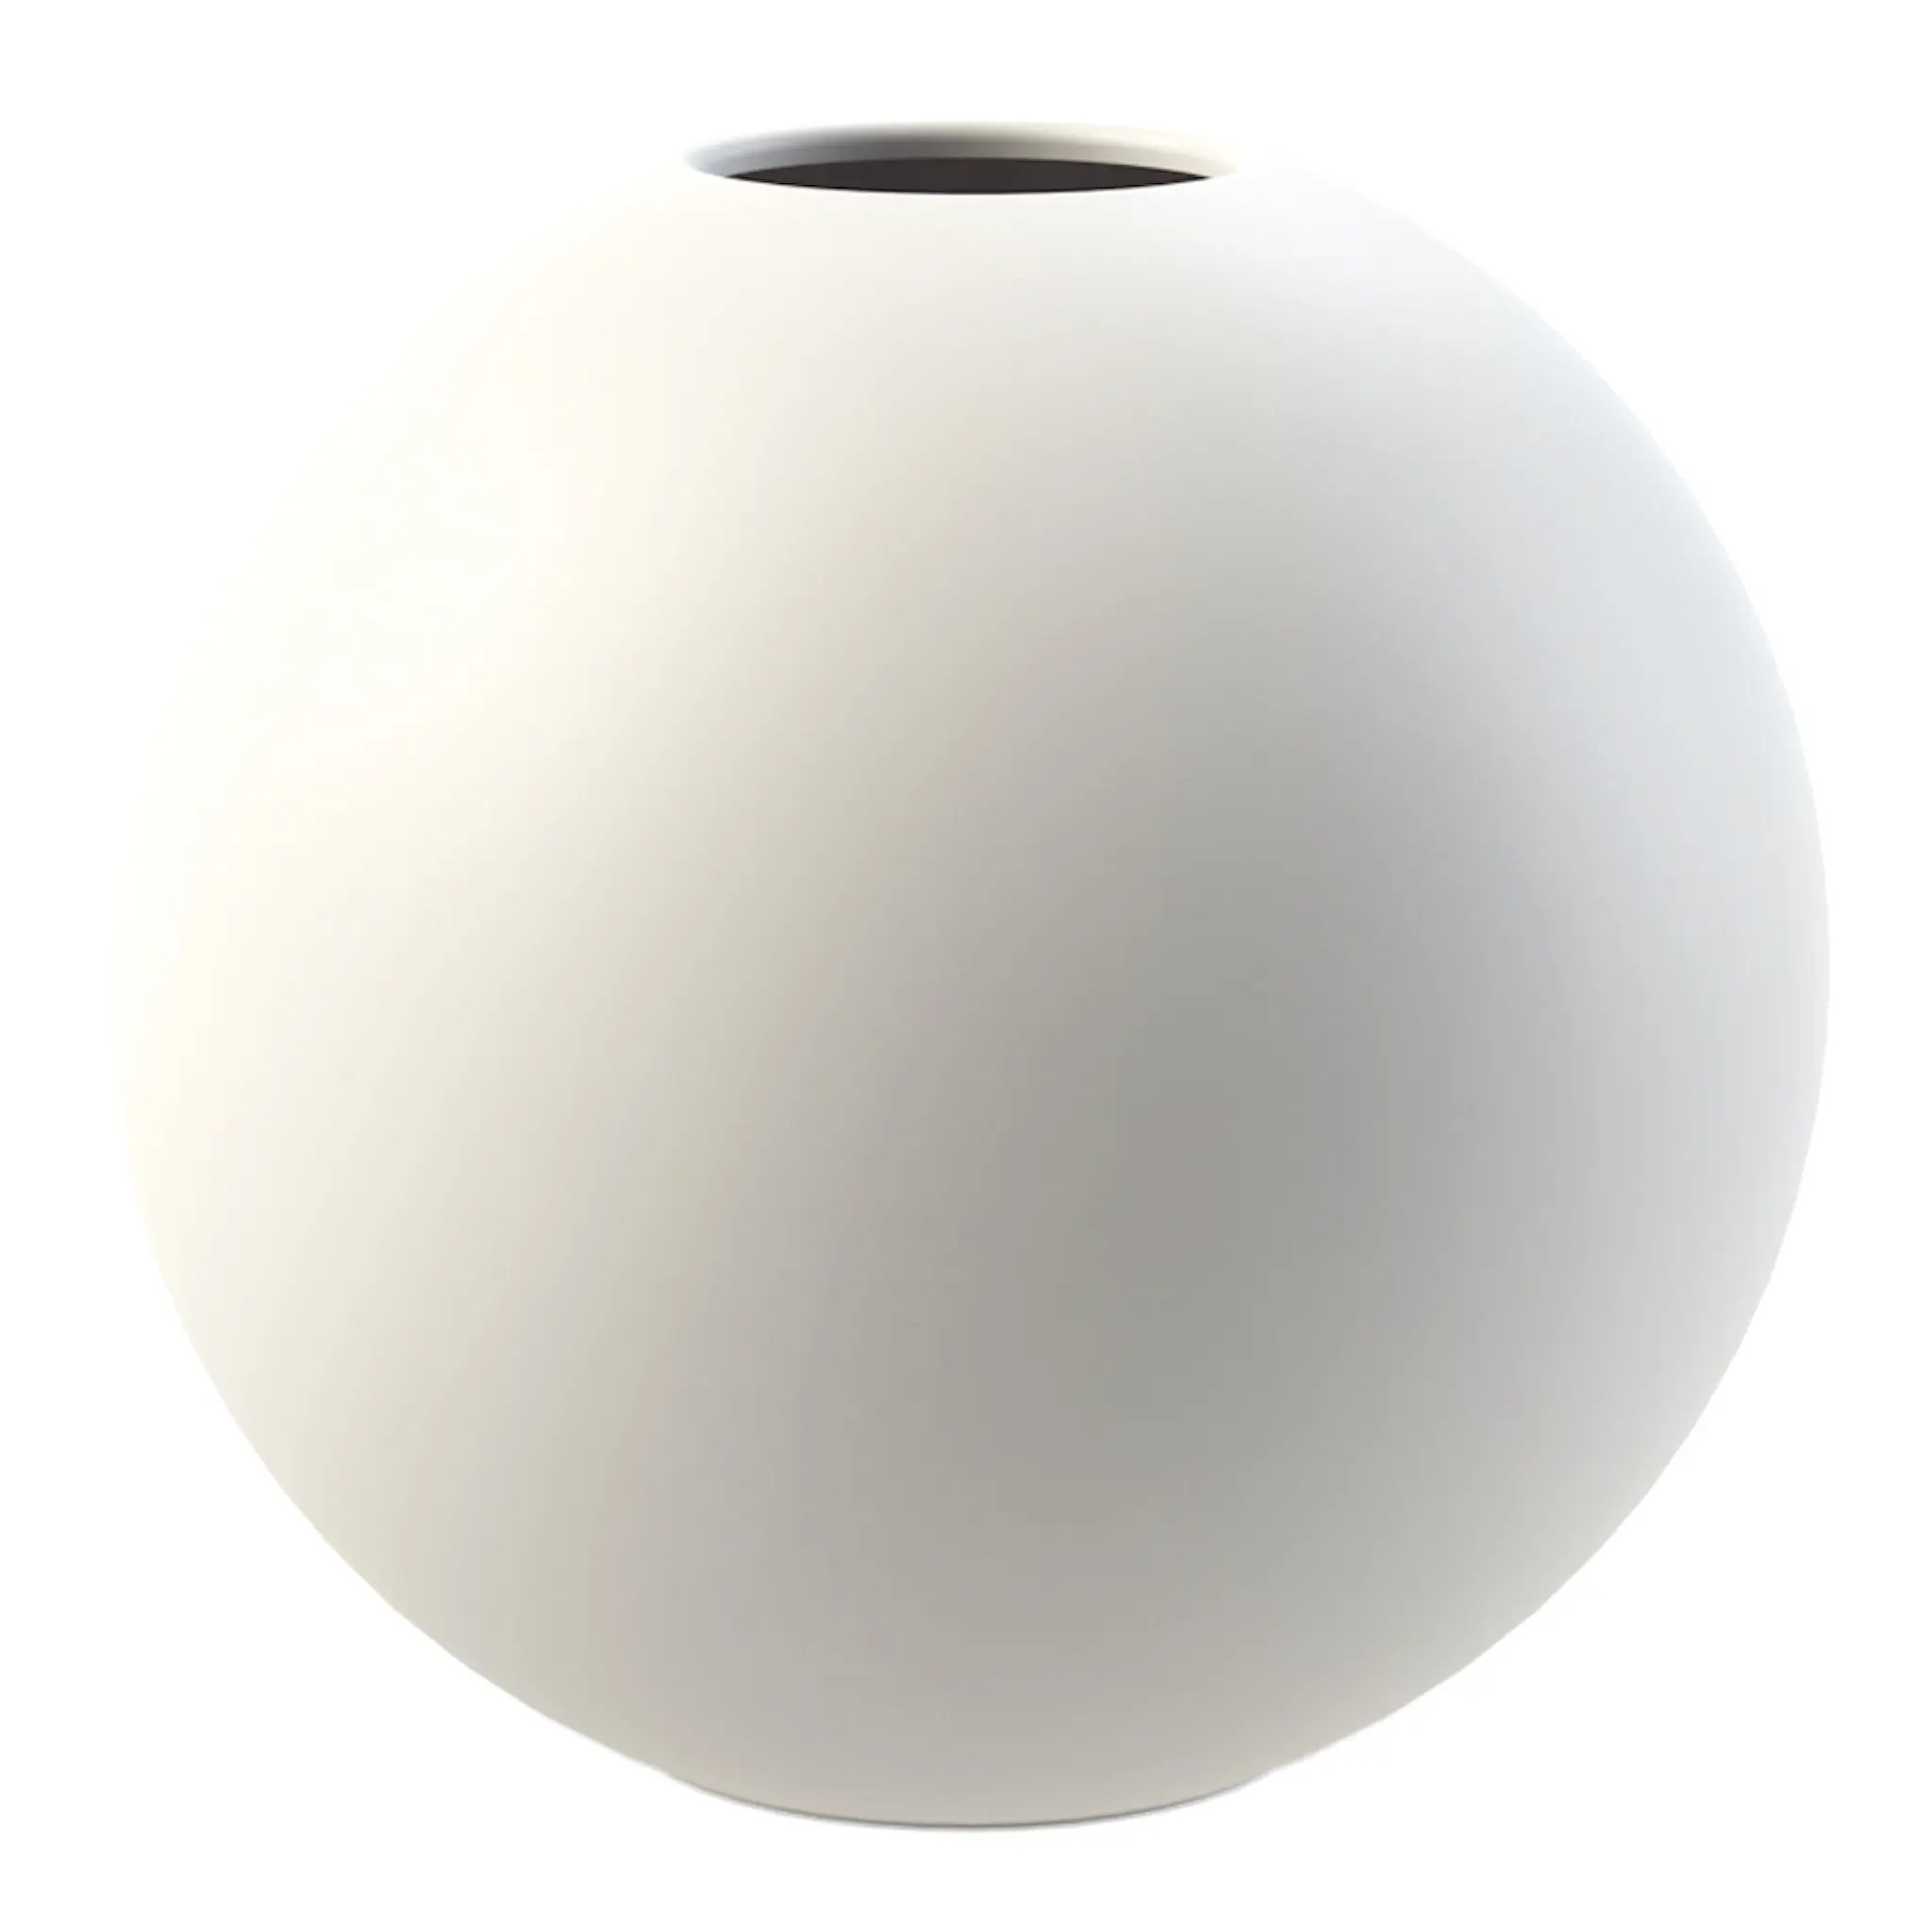 Cooee Ball Maljakko 8 cm Valkoinen 